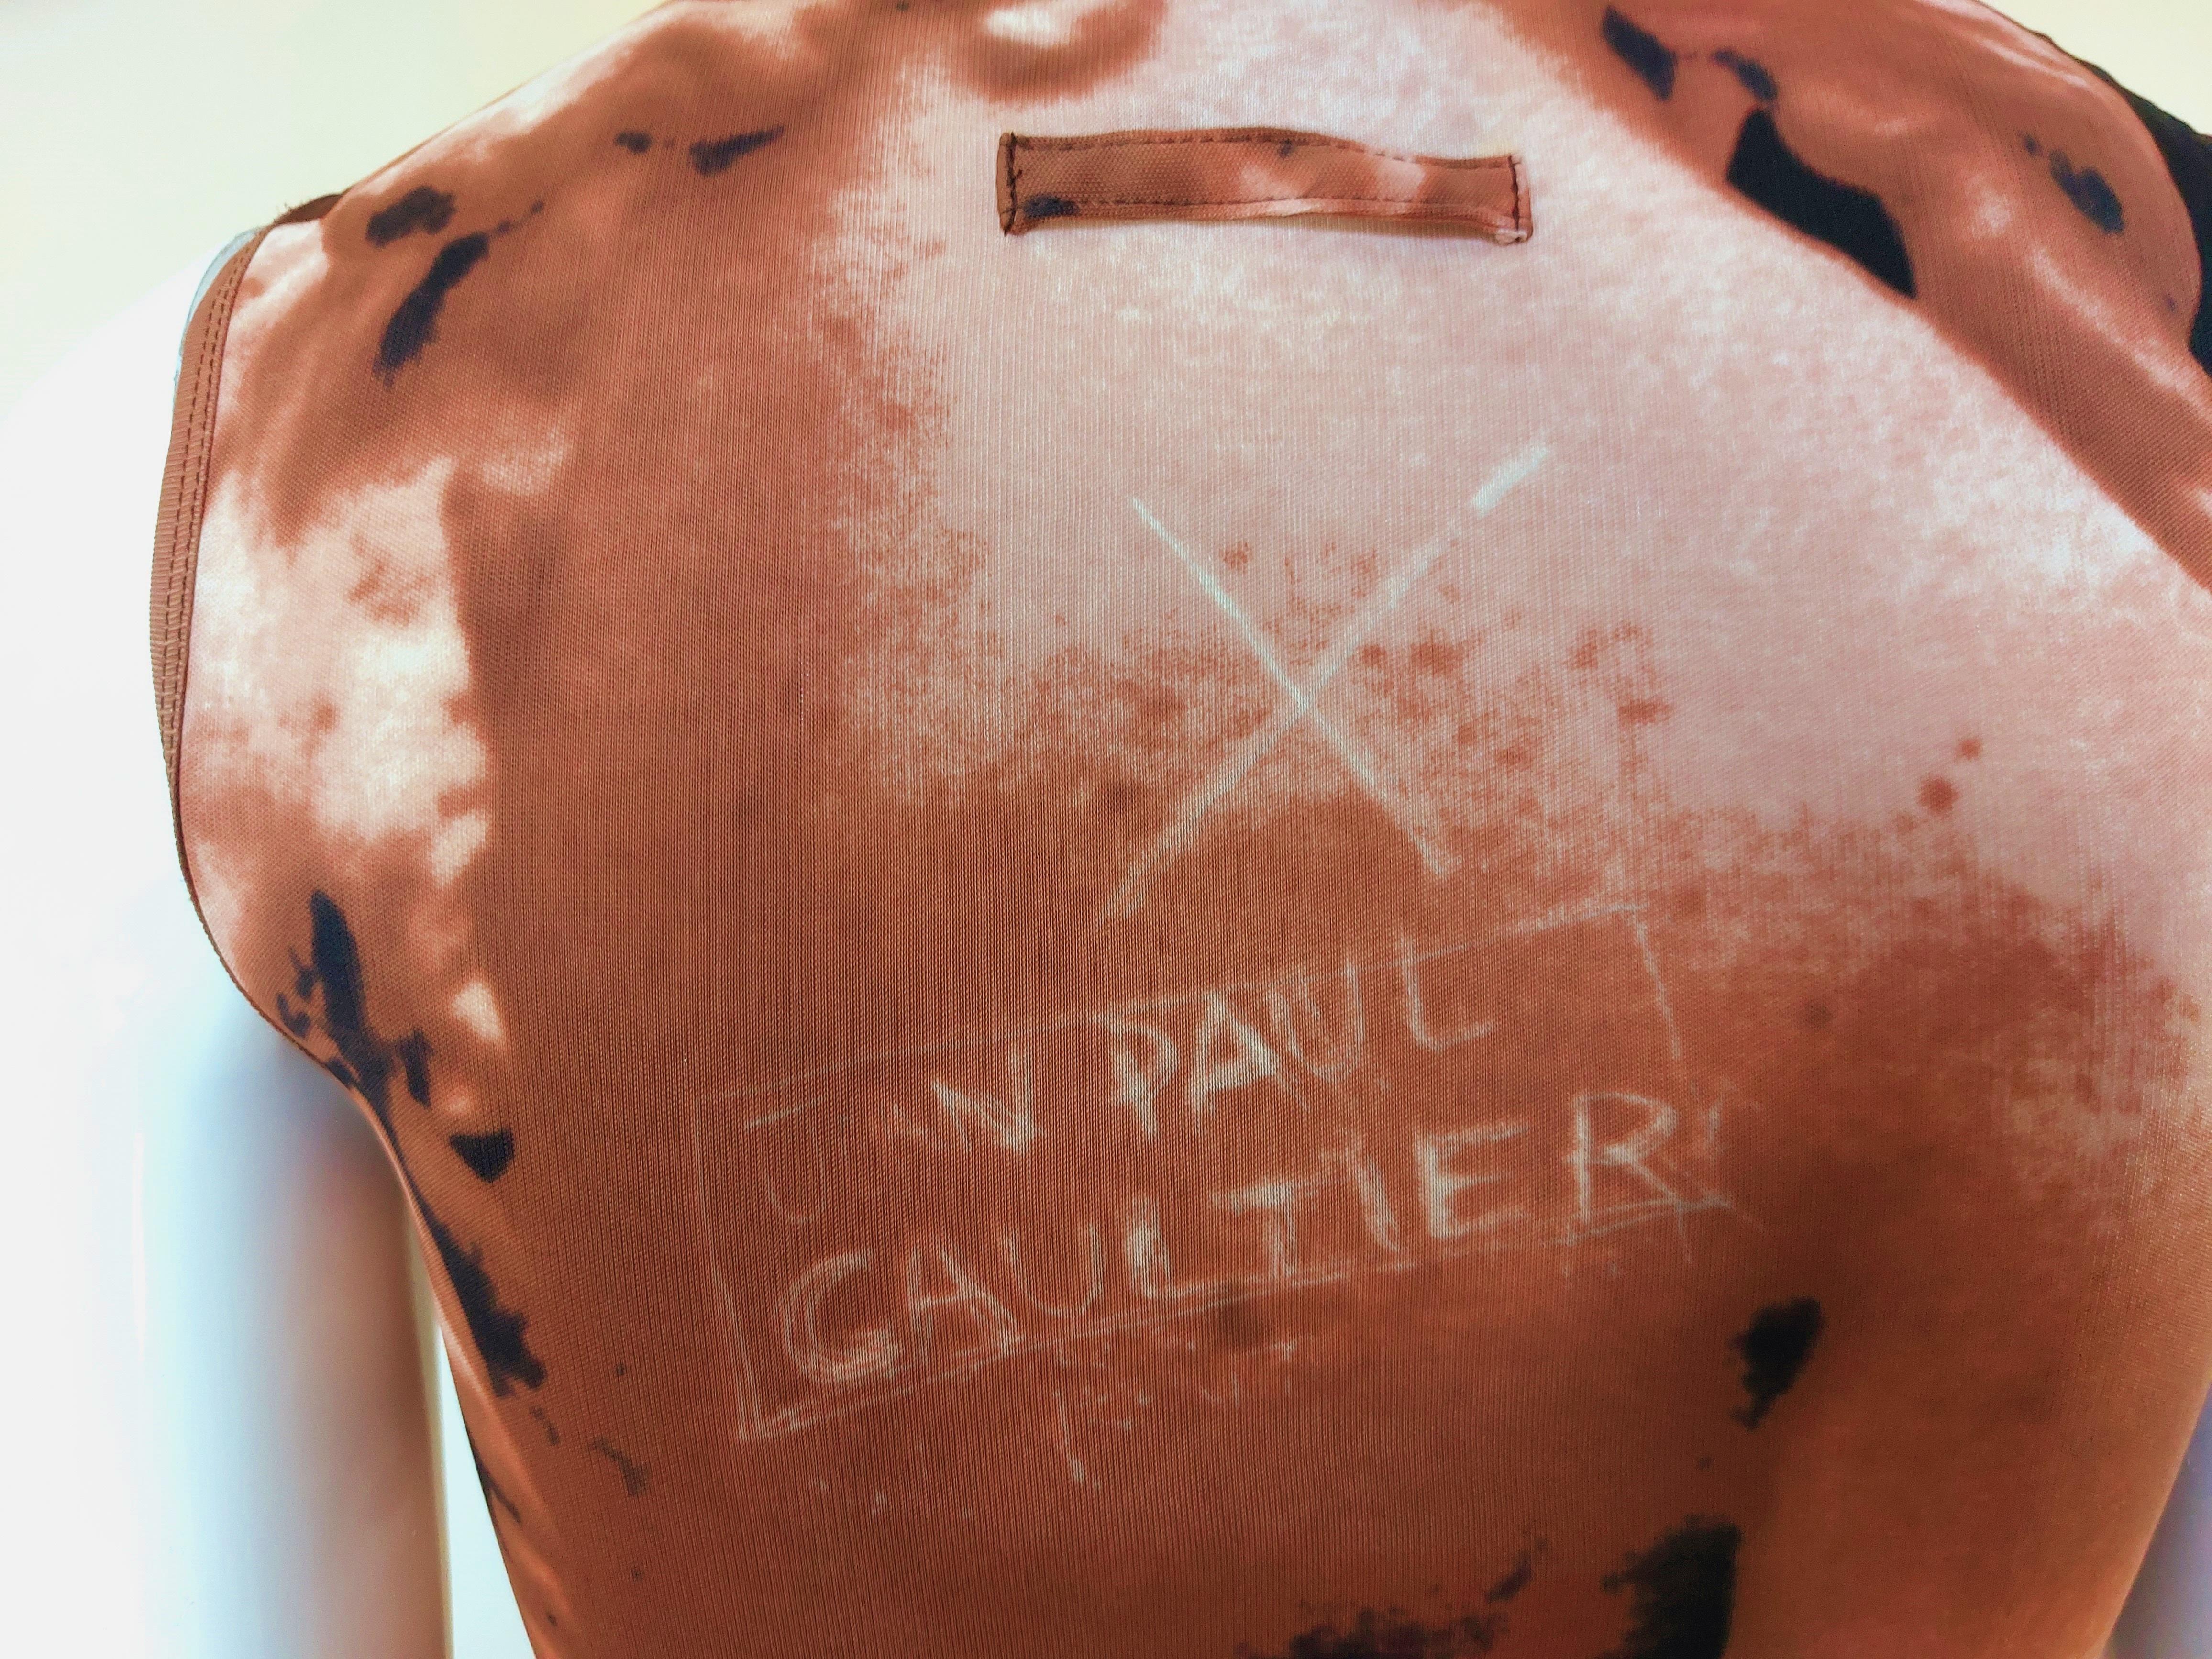 Jean Paul Gaultier S1999 Graffiti Goddess Venus Nude Trompe L'oeil Runway Dress 10